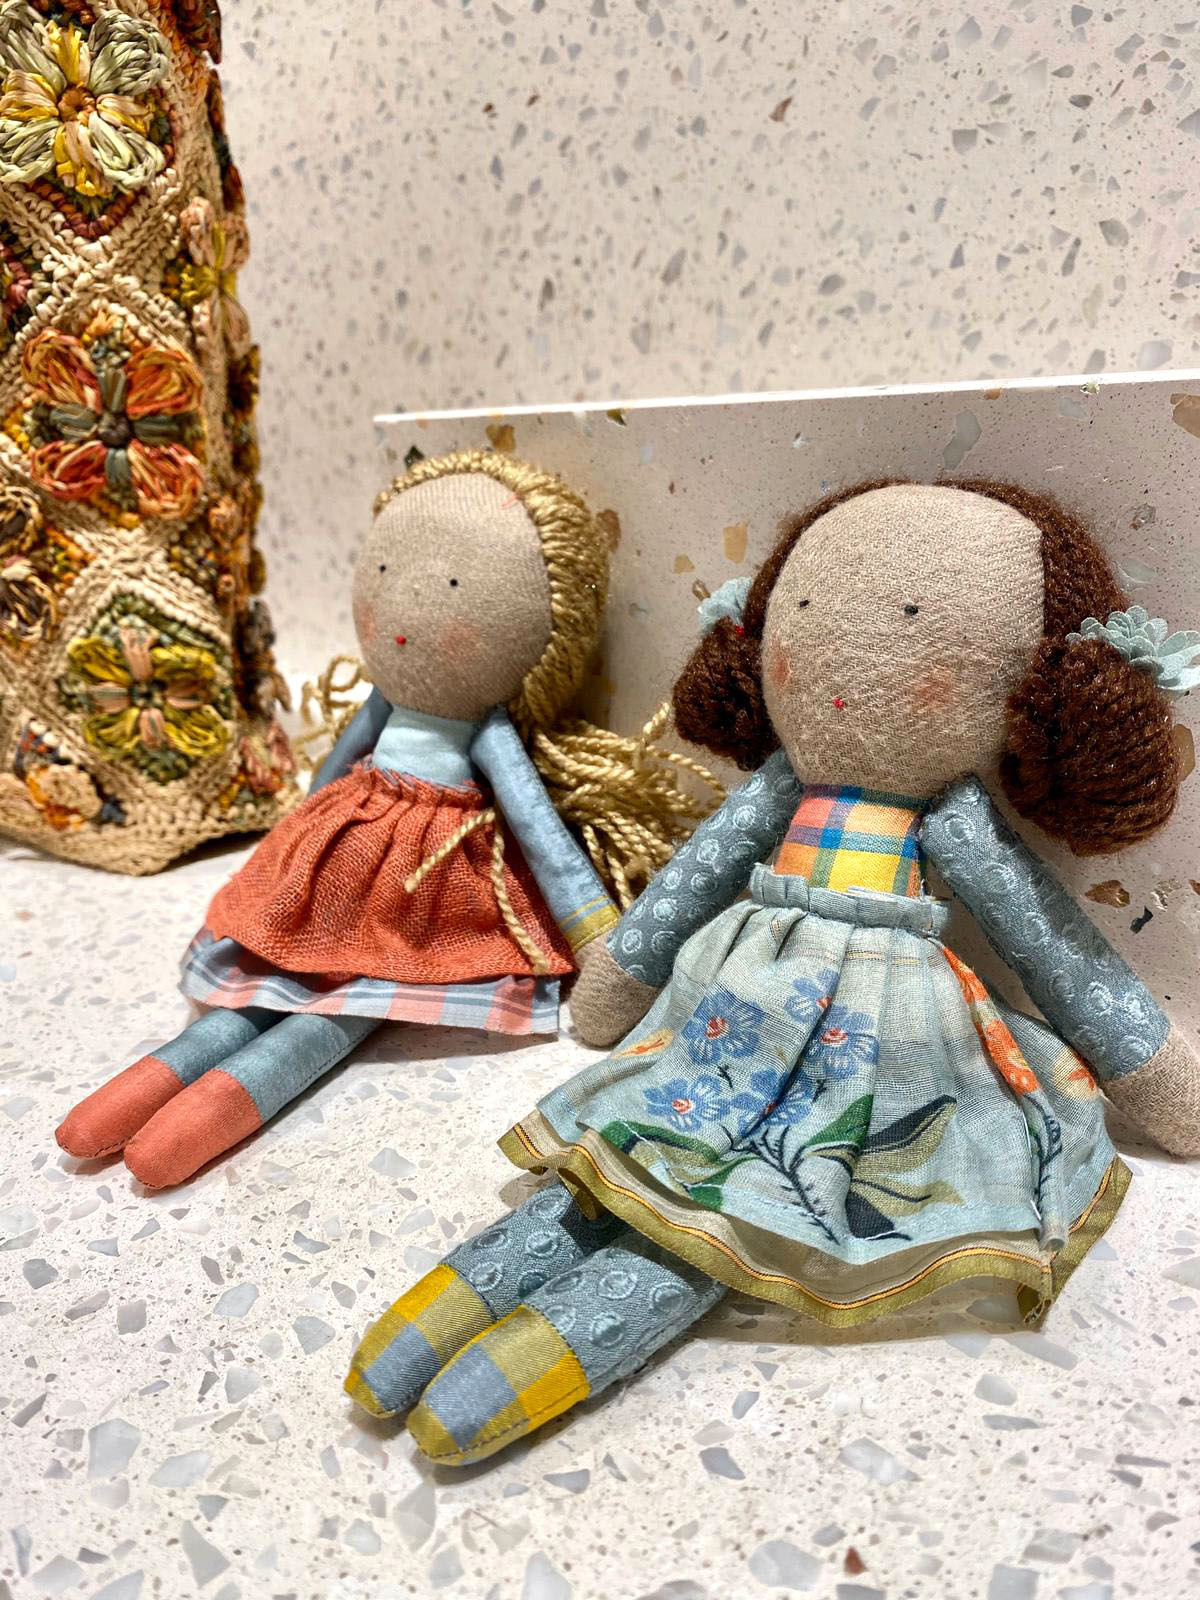 布娃娃是每個女生的童年回憶，您還記得您第一隻布娃娃嗎？ 糅合現代美學與傳統紡織工藝的印度品牌PÉRO為慶祝成立十週年，特別推出獨家限量紀念布娃娃系列。每個手造娃娃均穿上品牌於十年間推出的服飾，精緻且別具收藏價值，趁着假日來Cocktail Select Shop太古廣場店參觀一下，回味您童年的快樂時光吧！ 太古廣場店鋪地址﹕金鐘太古廣場 1 樓 144 號店 更多Cocktail單品在Sidefame網店發售﹕...